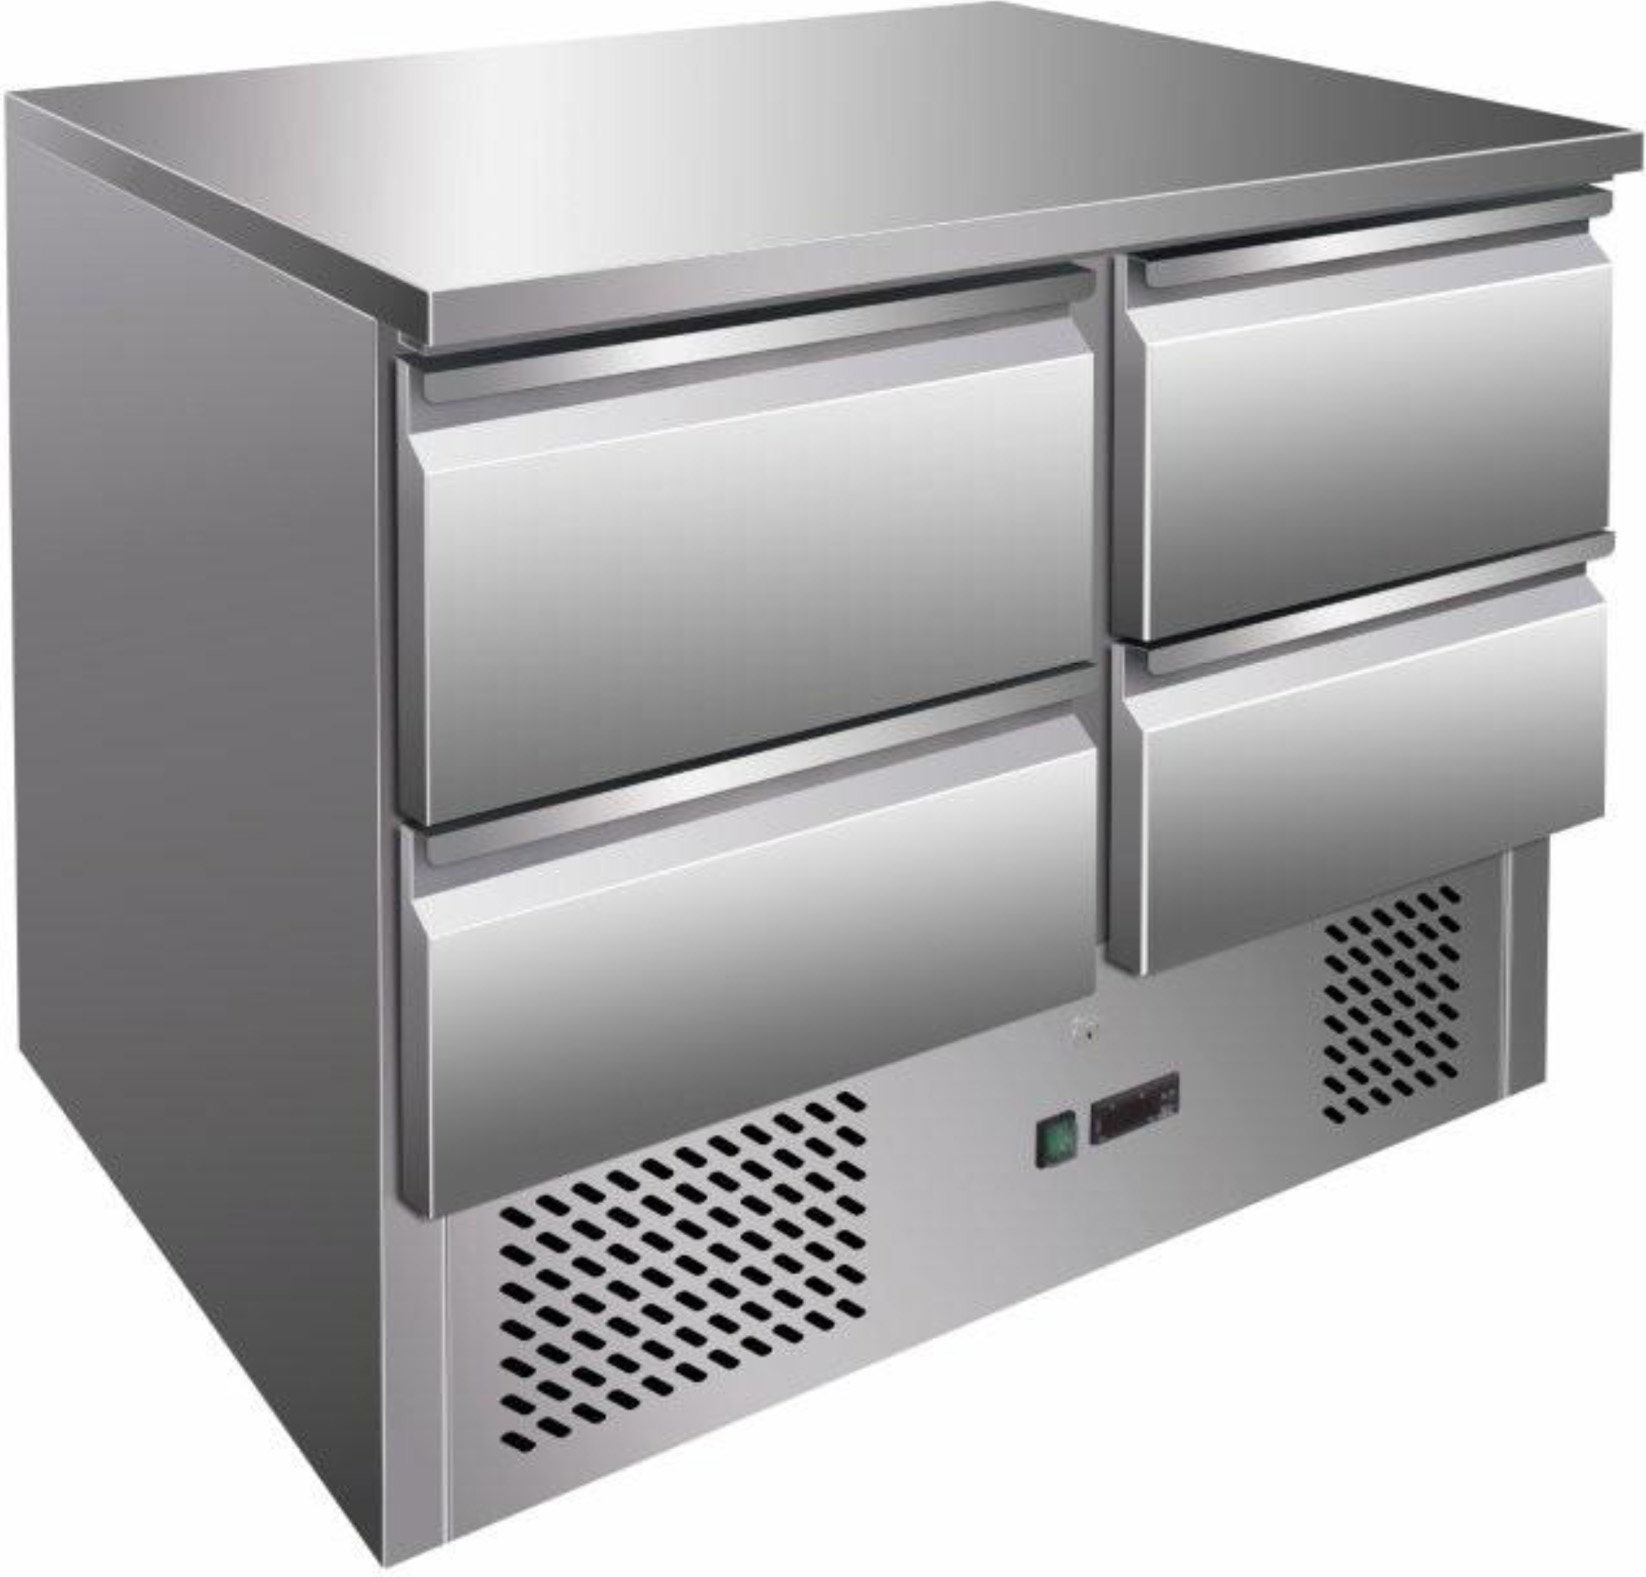 Külmtöölaud S901-4D